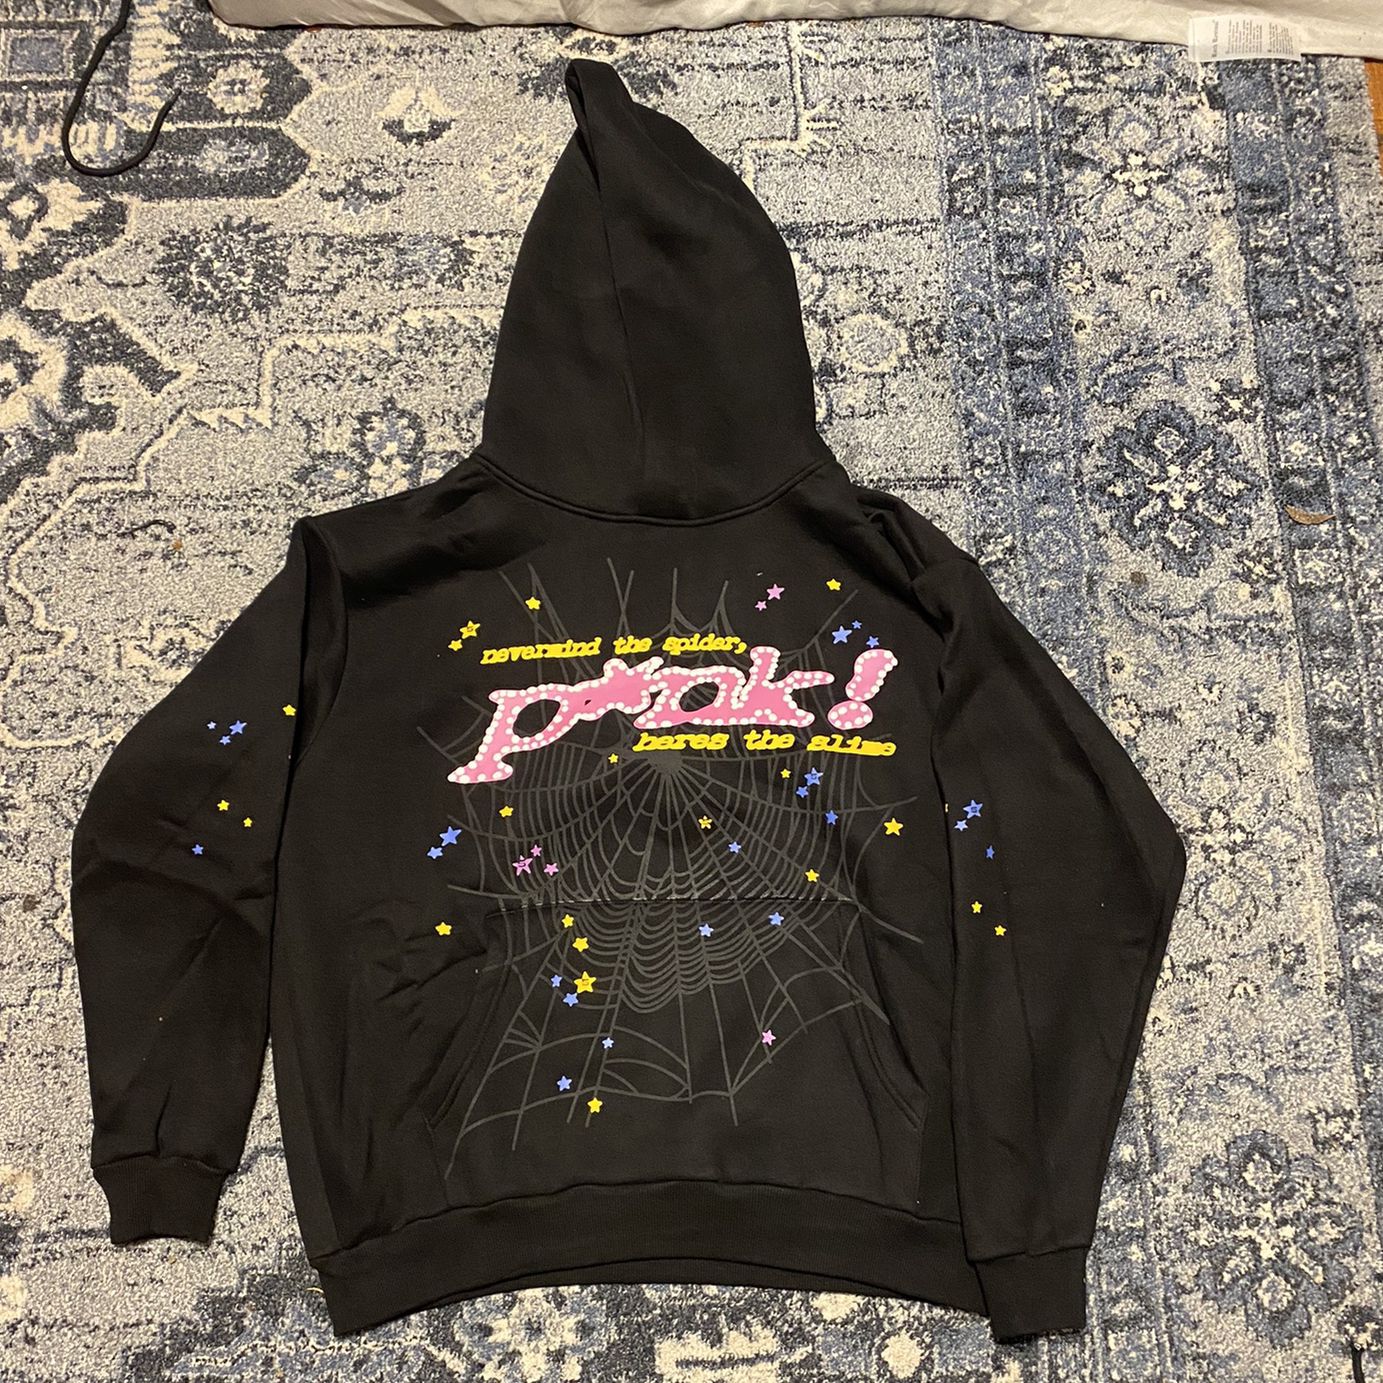  pink sp5der hoodie black